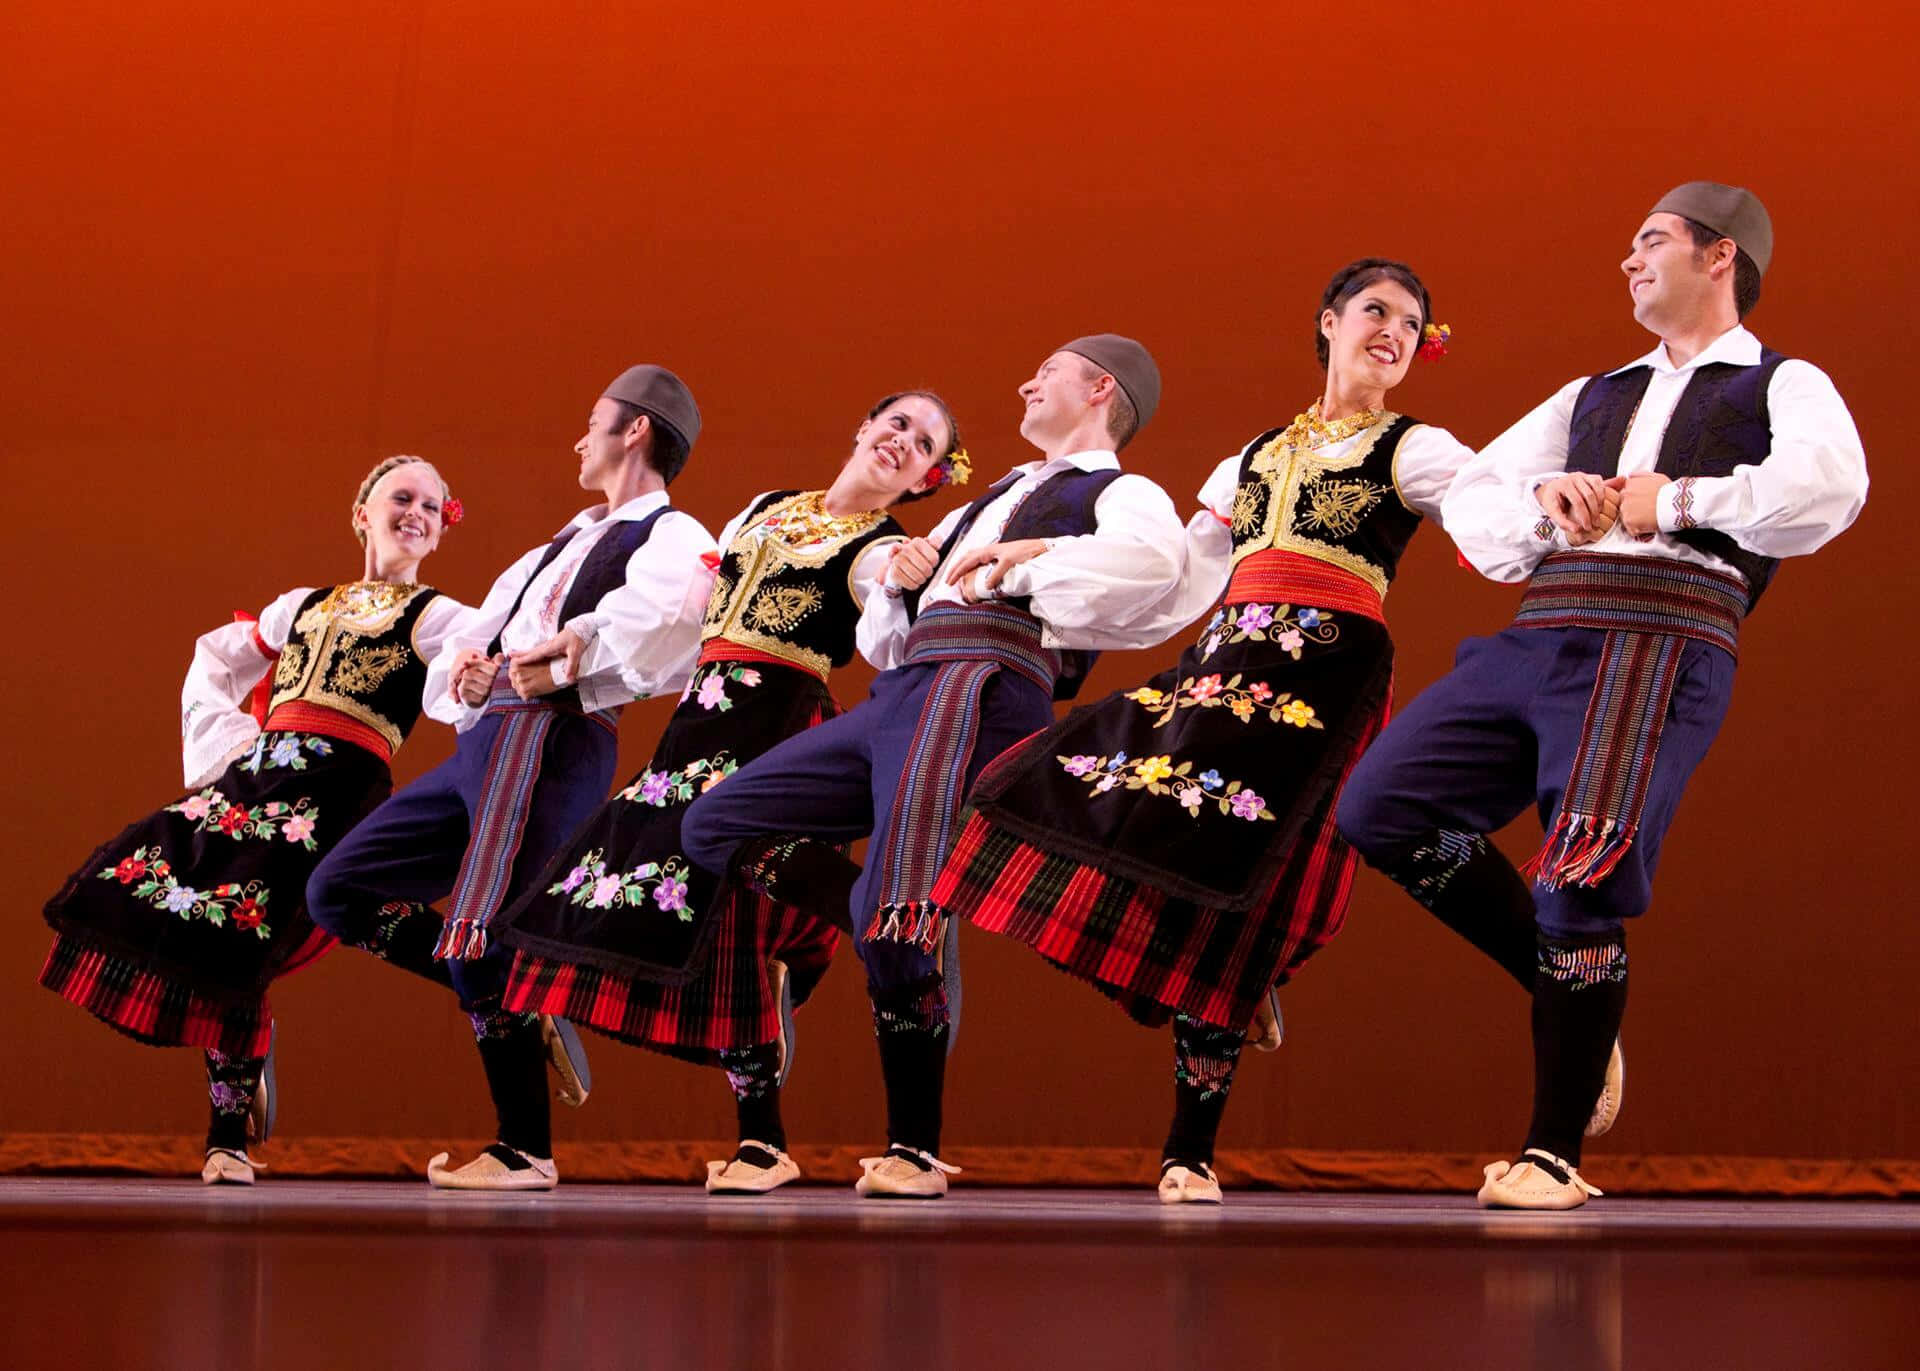 Einegruppe Von Menschen In Traditionellen Kostümen Tanzt.